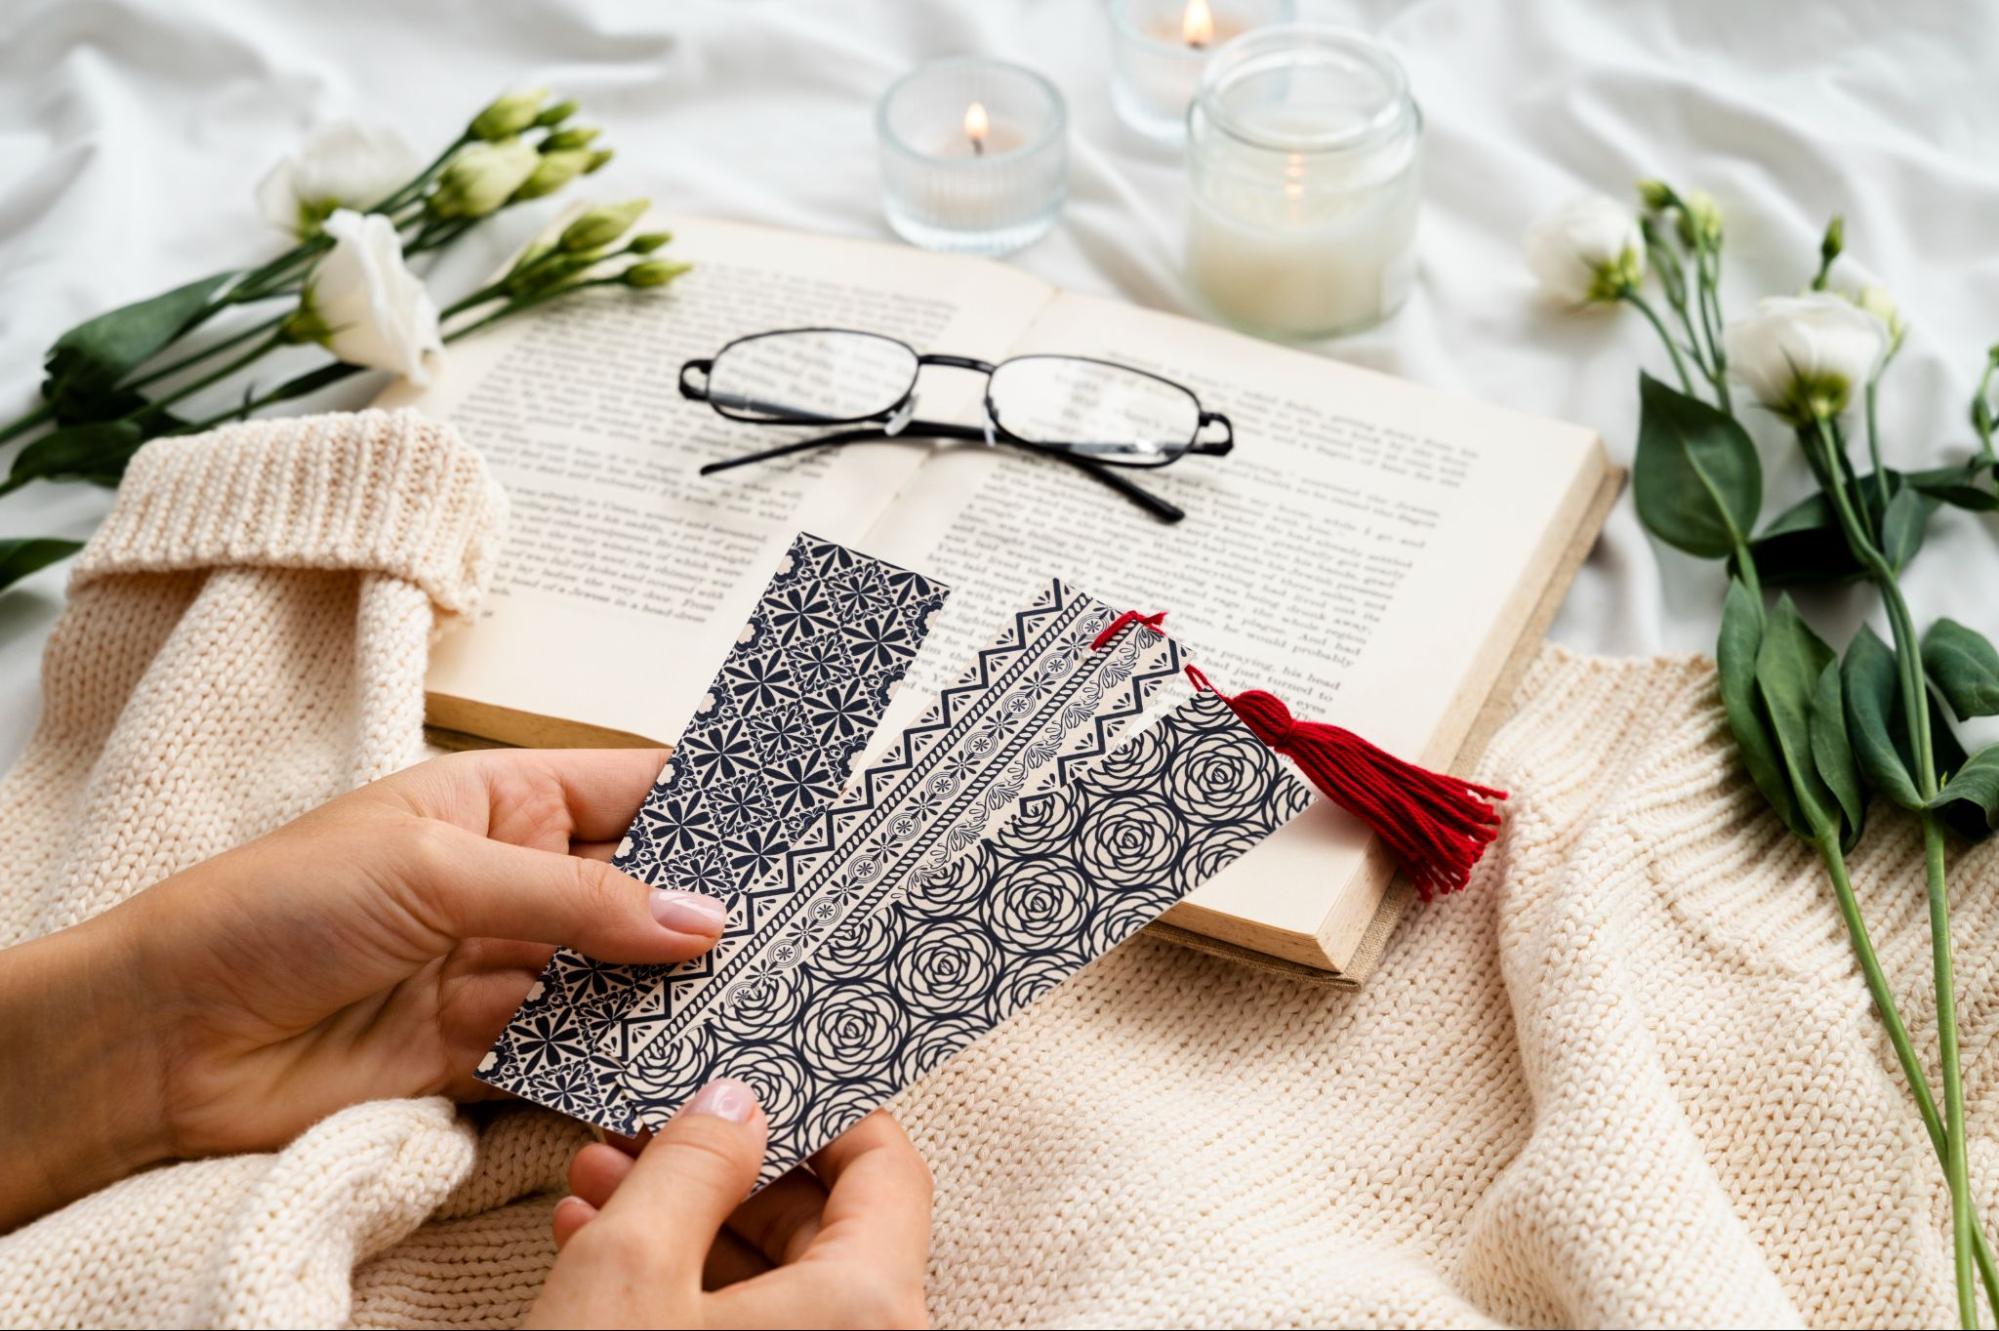 Elegant Handmade Bookmarks for Birthday Return Gift Ideas